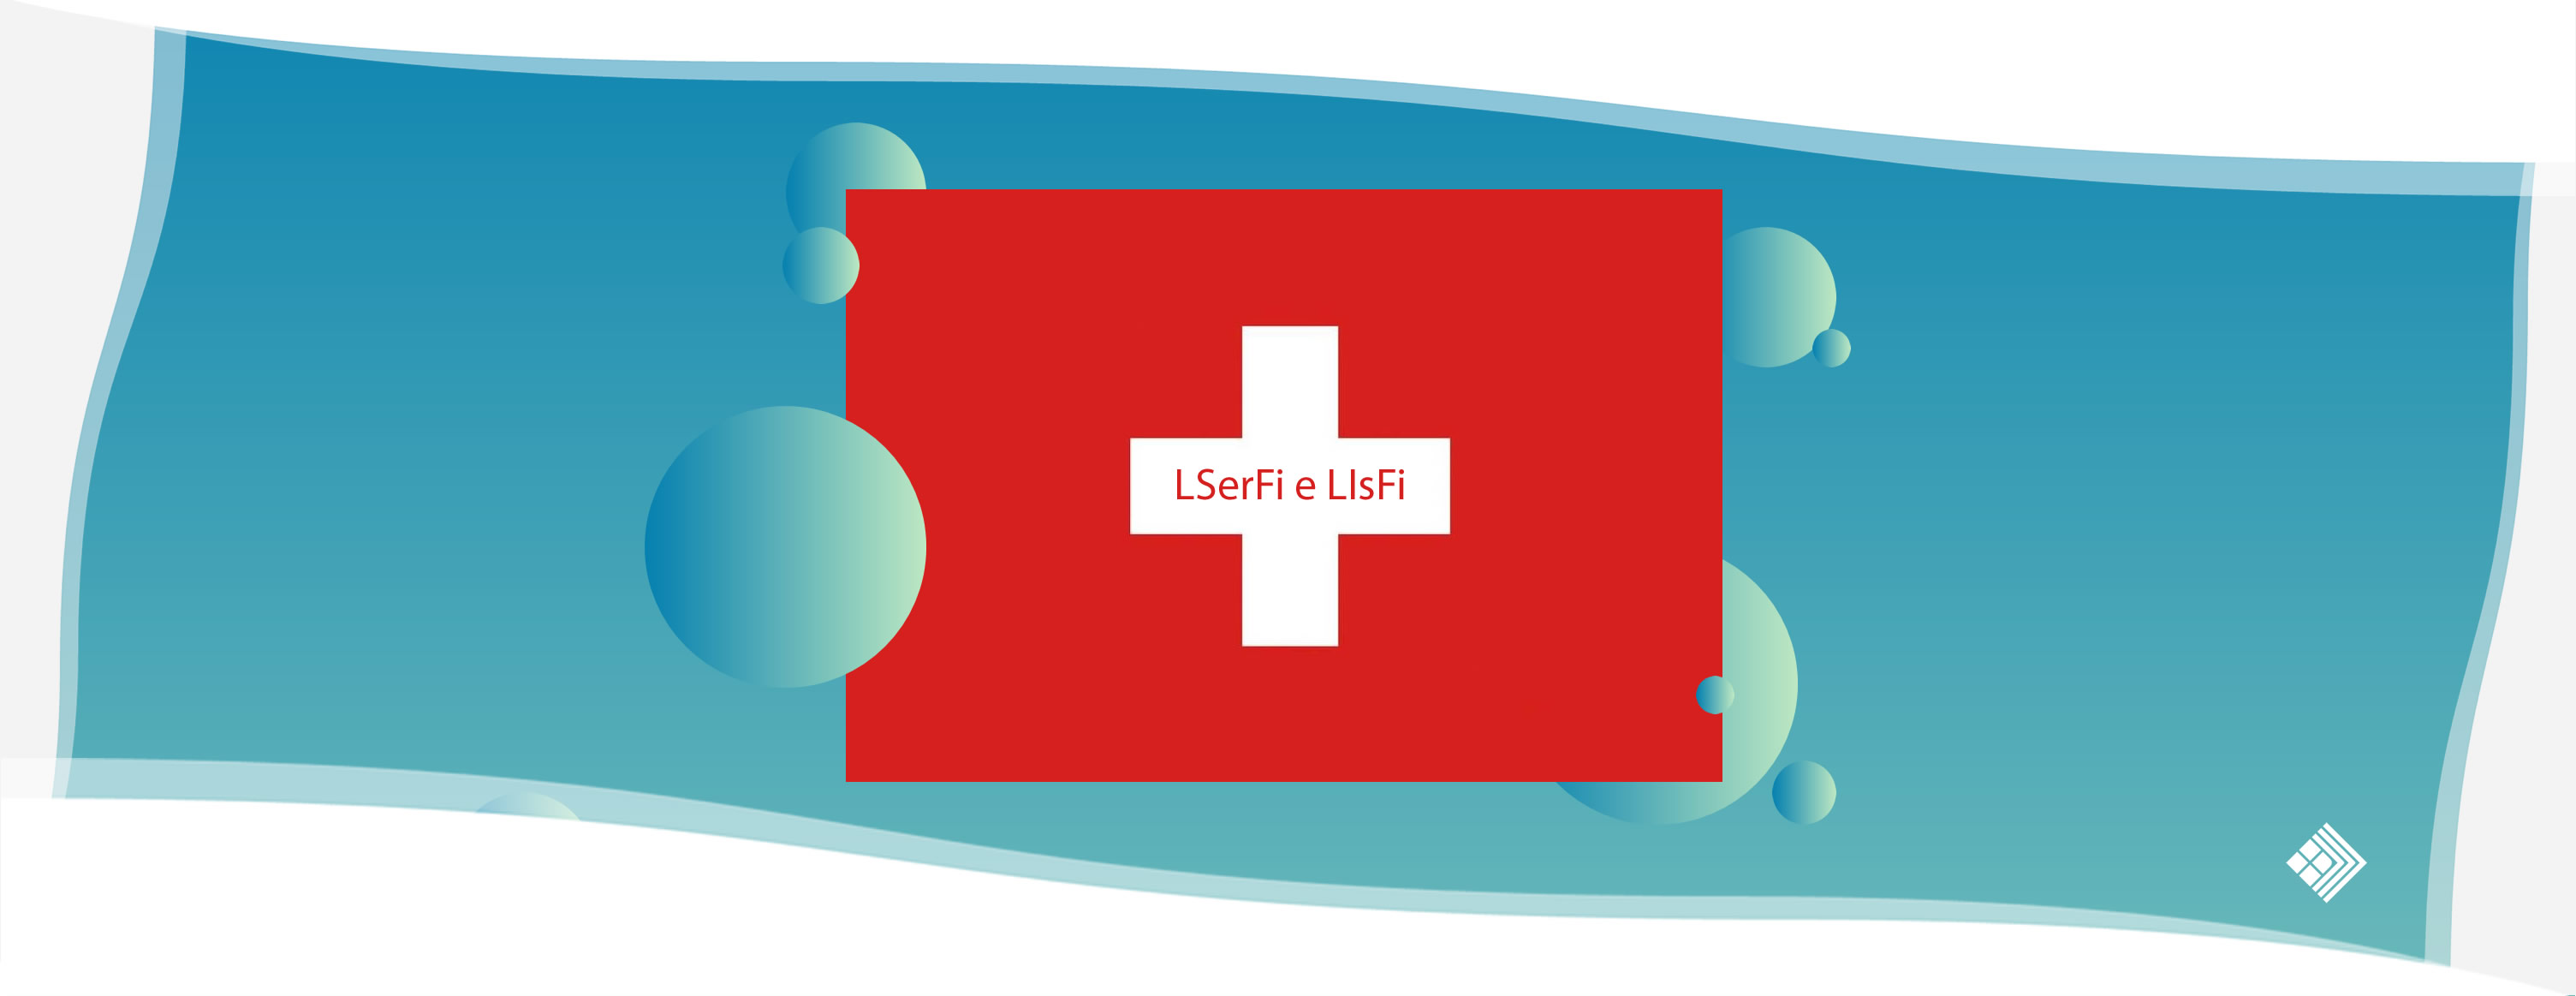 LSerFi y LIsFi - Ley de servicios financieros CADIT